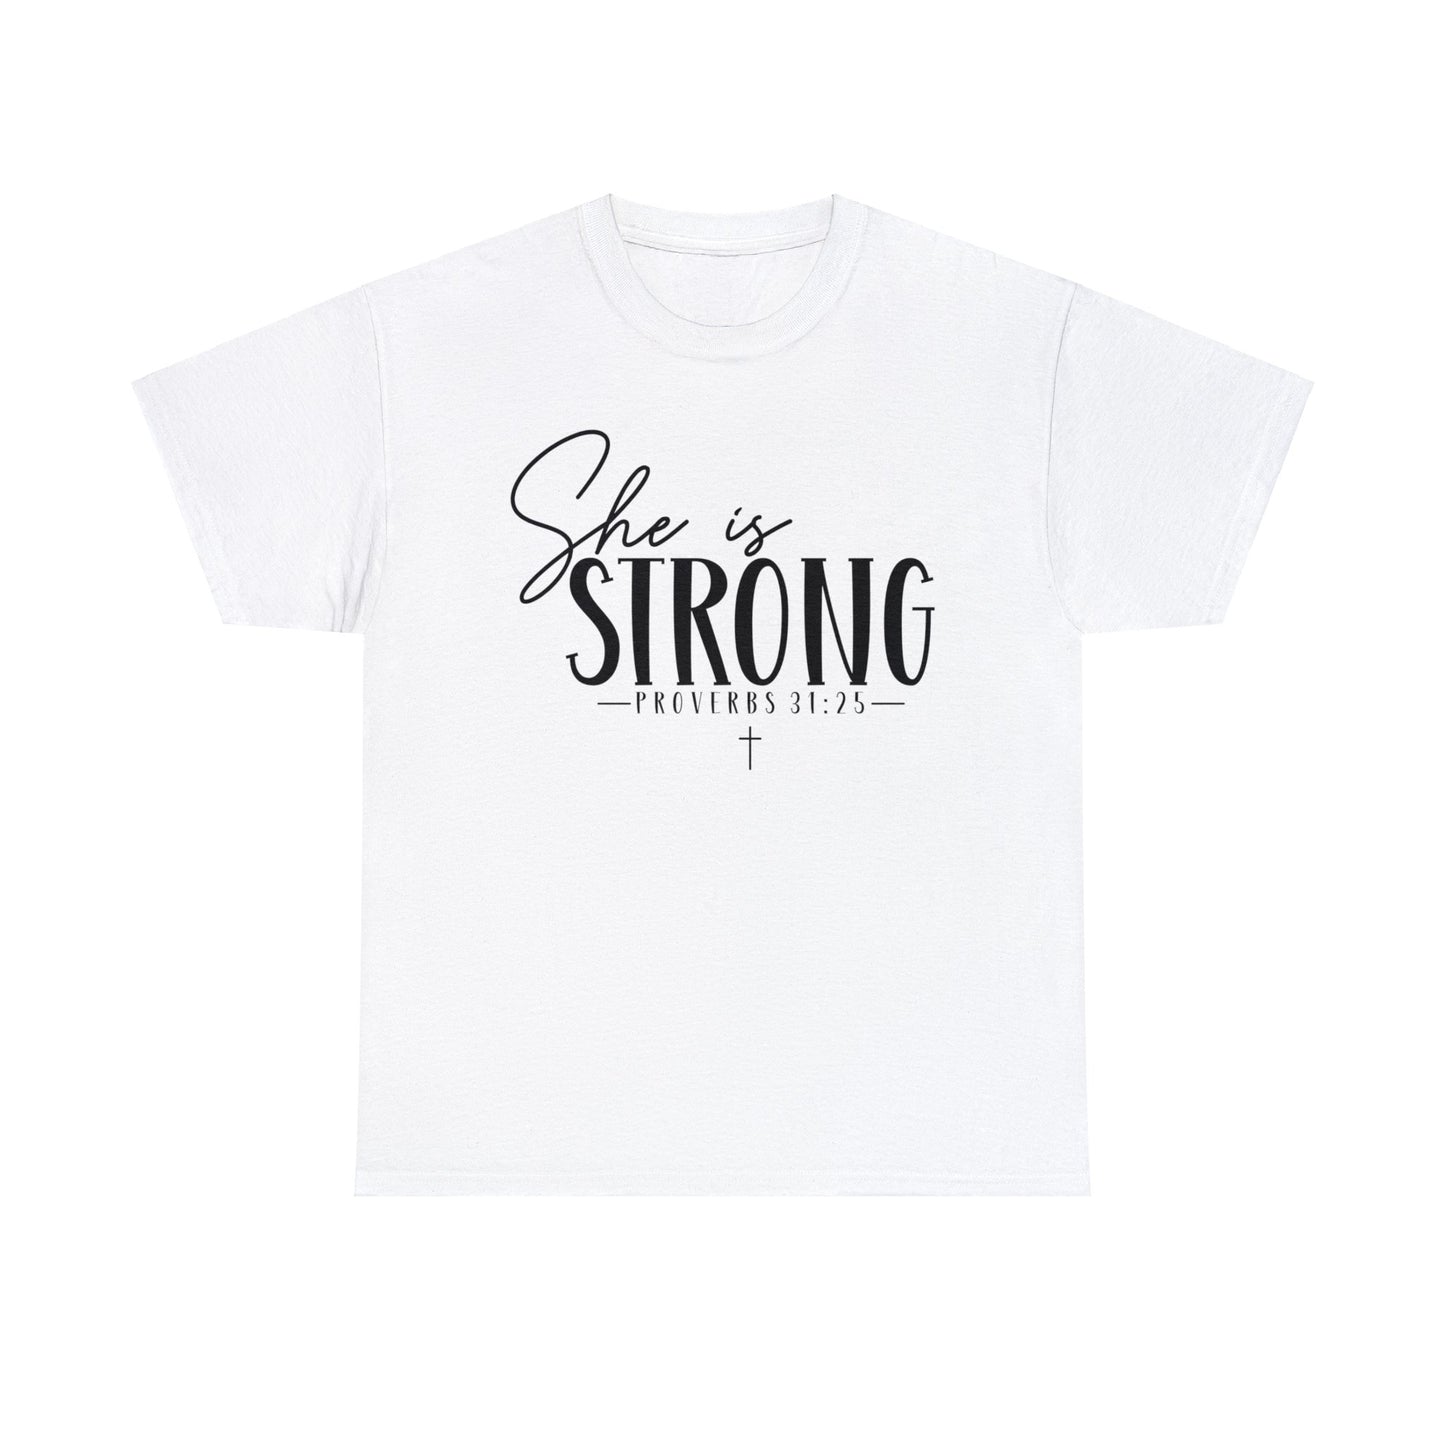 She Is Strong Shirt, Christian Shirt, Religious Shirt, Faith Tee (Faith-30)